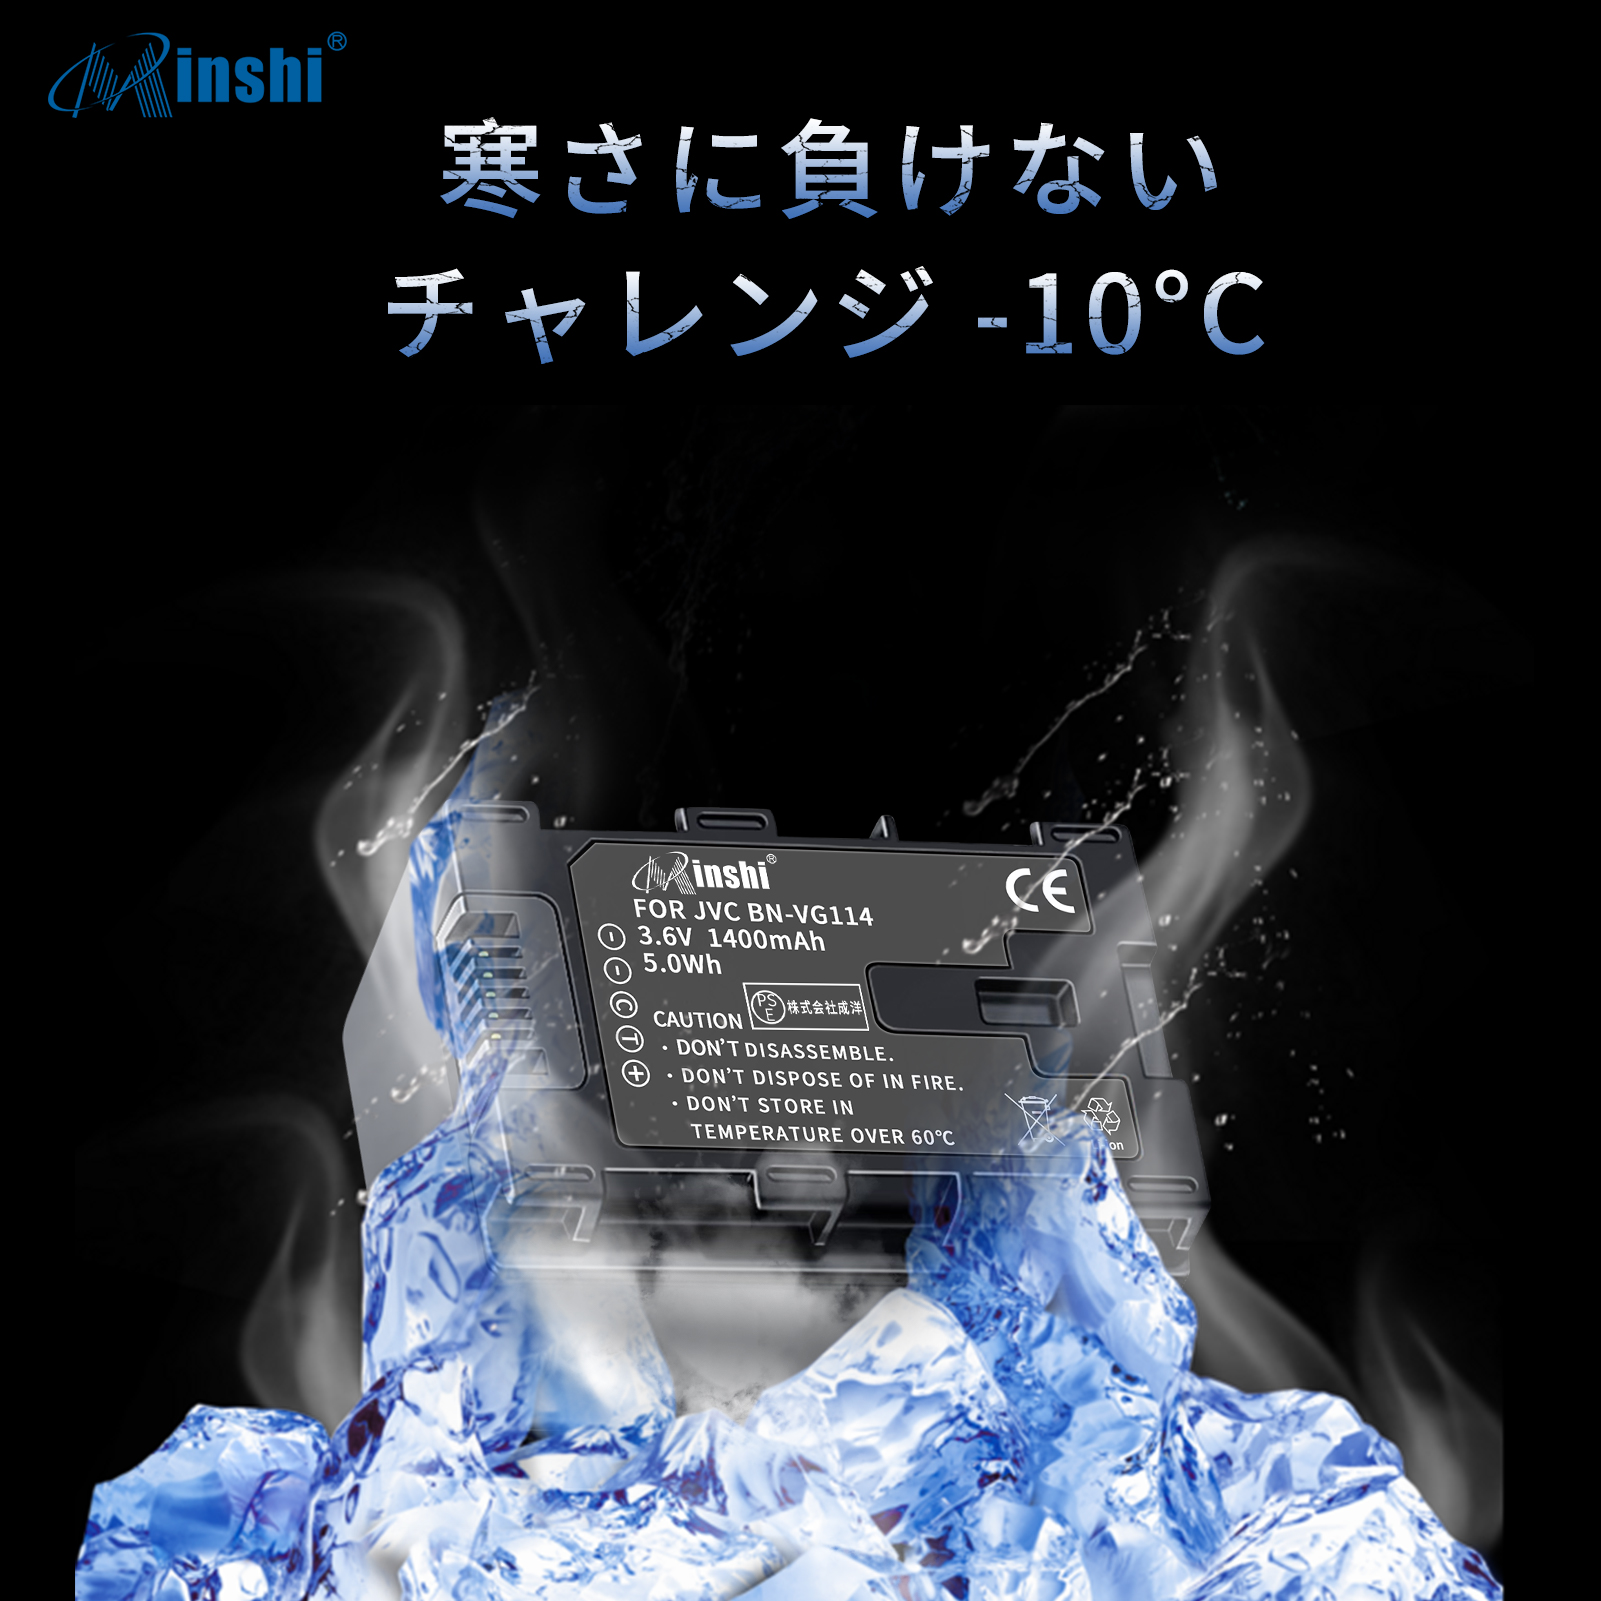 新型スマホOPPO 【２個セット】 minshi VICTOR GZ-HD620 BN-VG121 対応 互換バッテリー 1400mAh 高品質交換用バッテリー